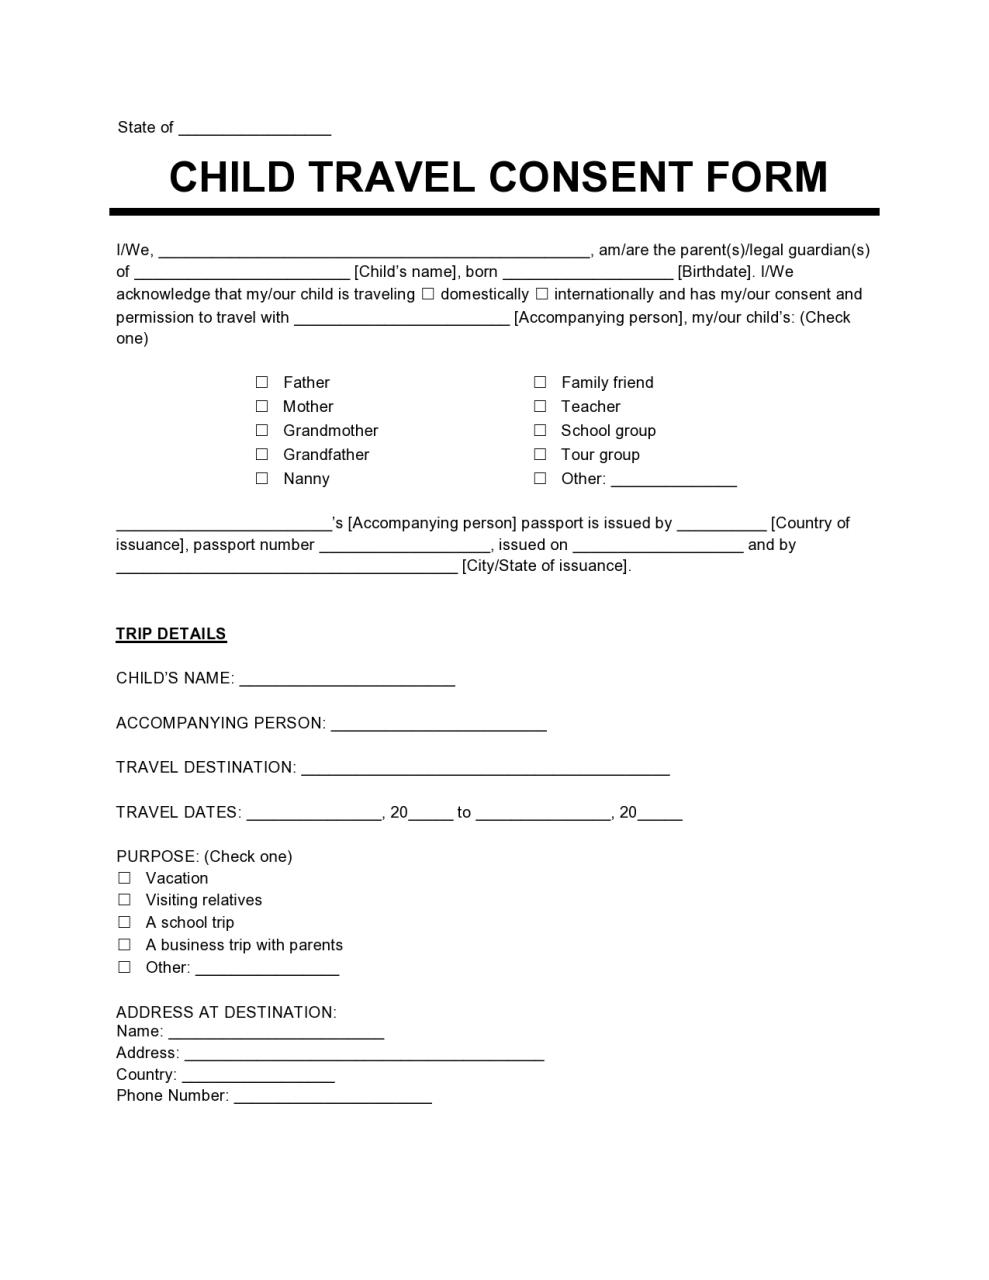 Formulario de consentimiento de viaje gratuito para niños 03